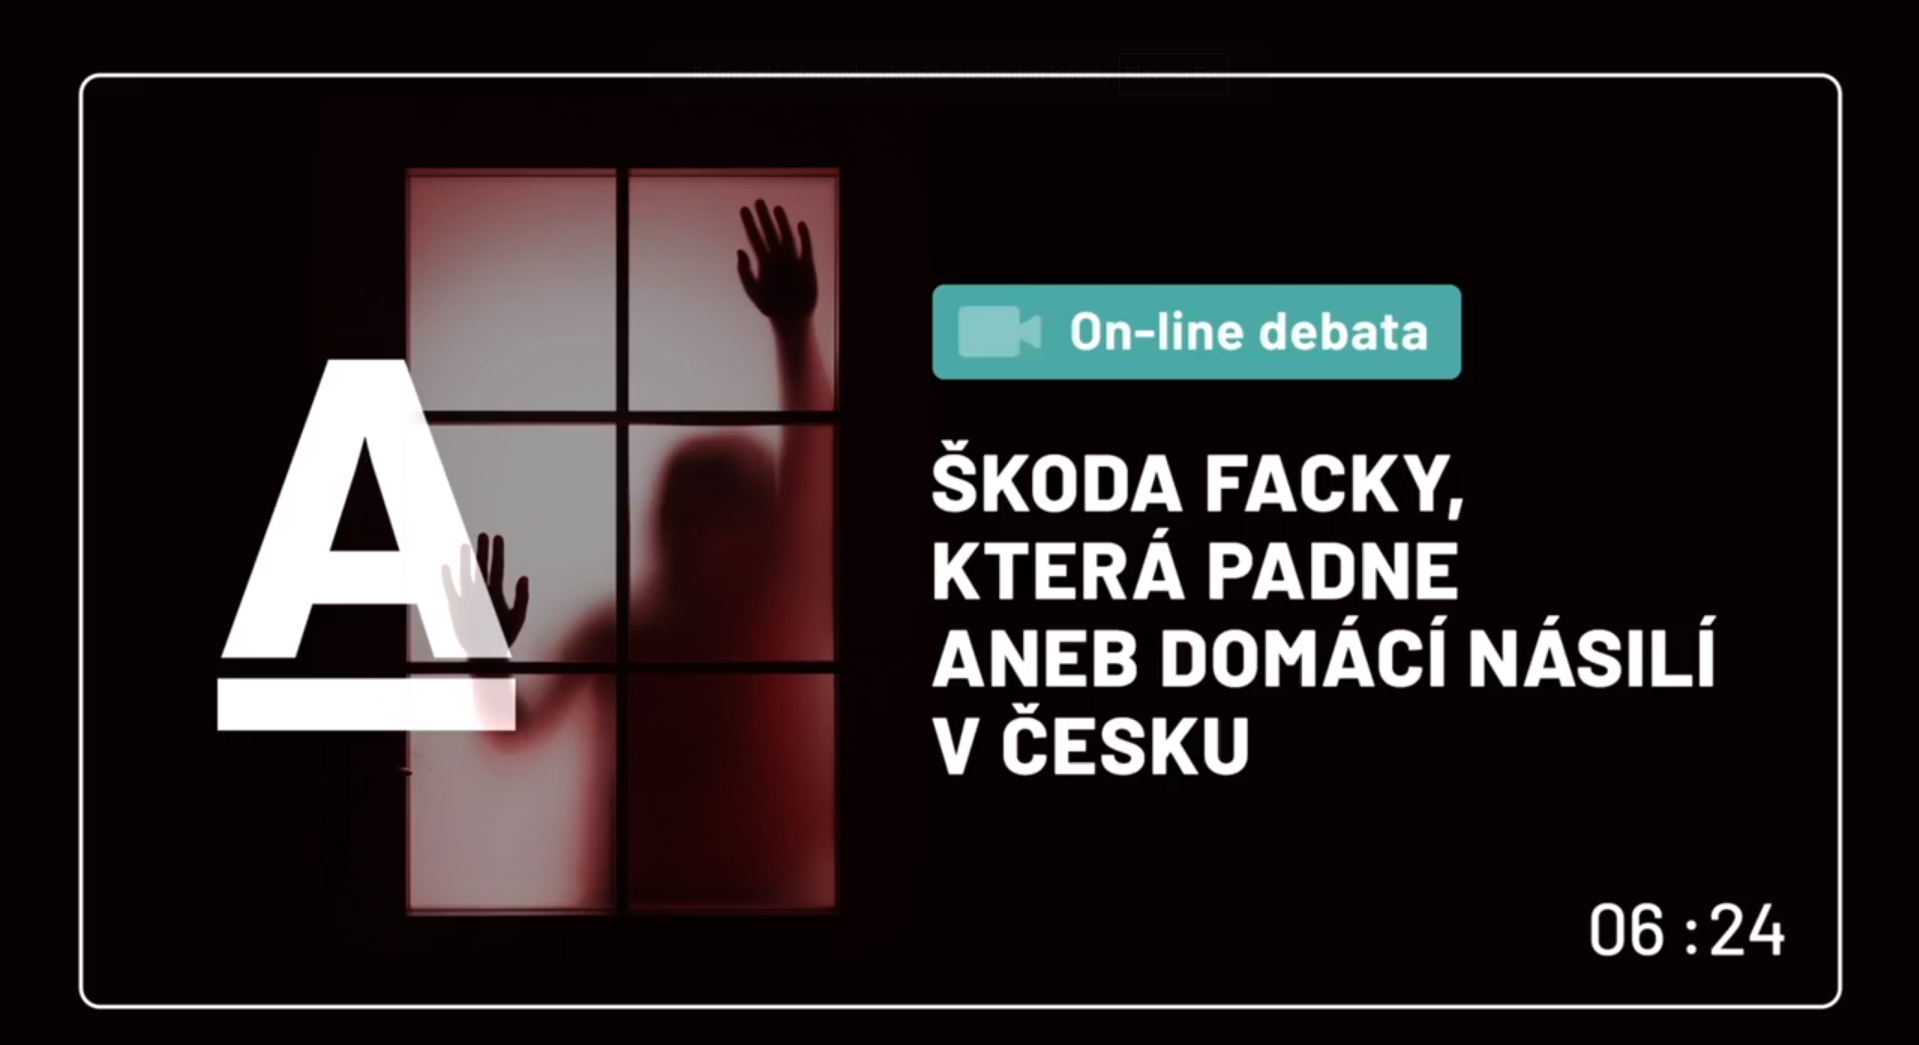 On-line debata Aktuálně.cz: Škoda facky, která padne aneb domácí násilí v Česku